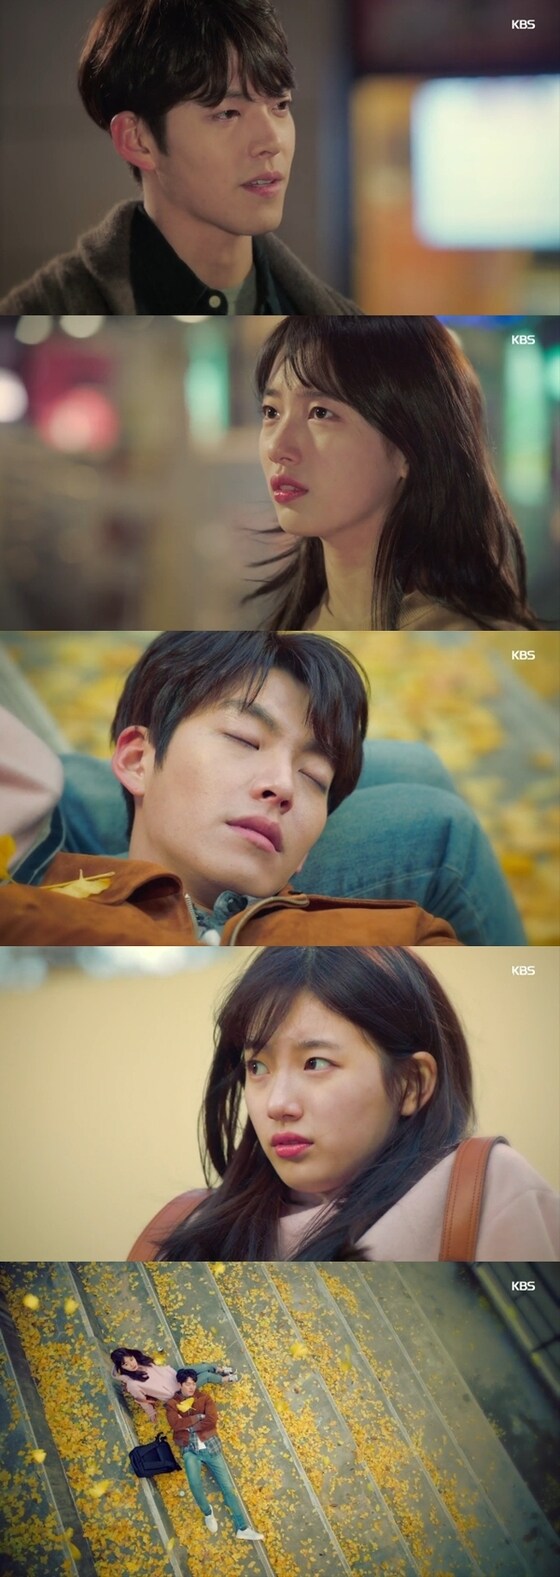 '함부로 애틋하게' 2차 티저 영상이 공개됐다. © News1star / KBS2 '함부로 애틋하게' 2차 티저 영상 캡처